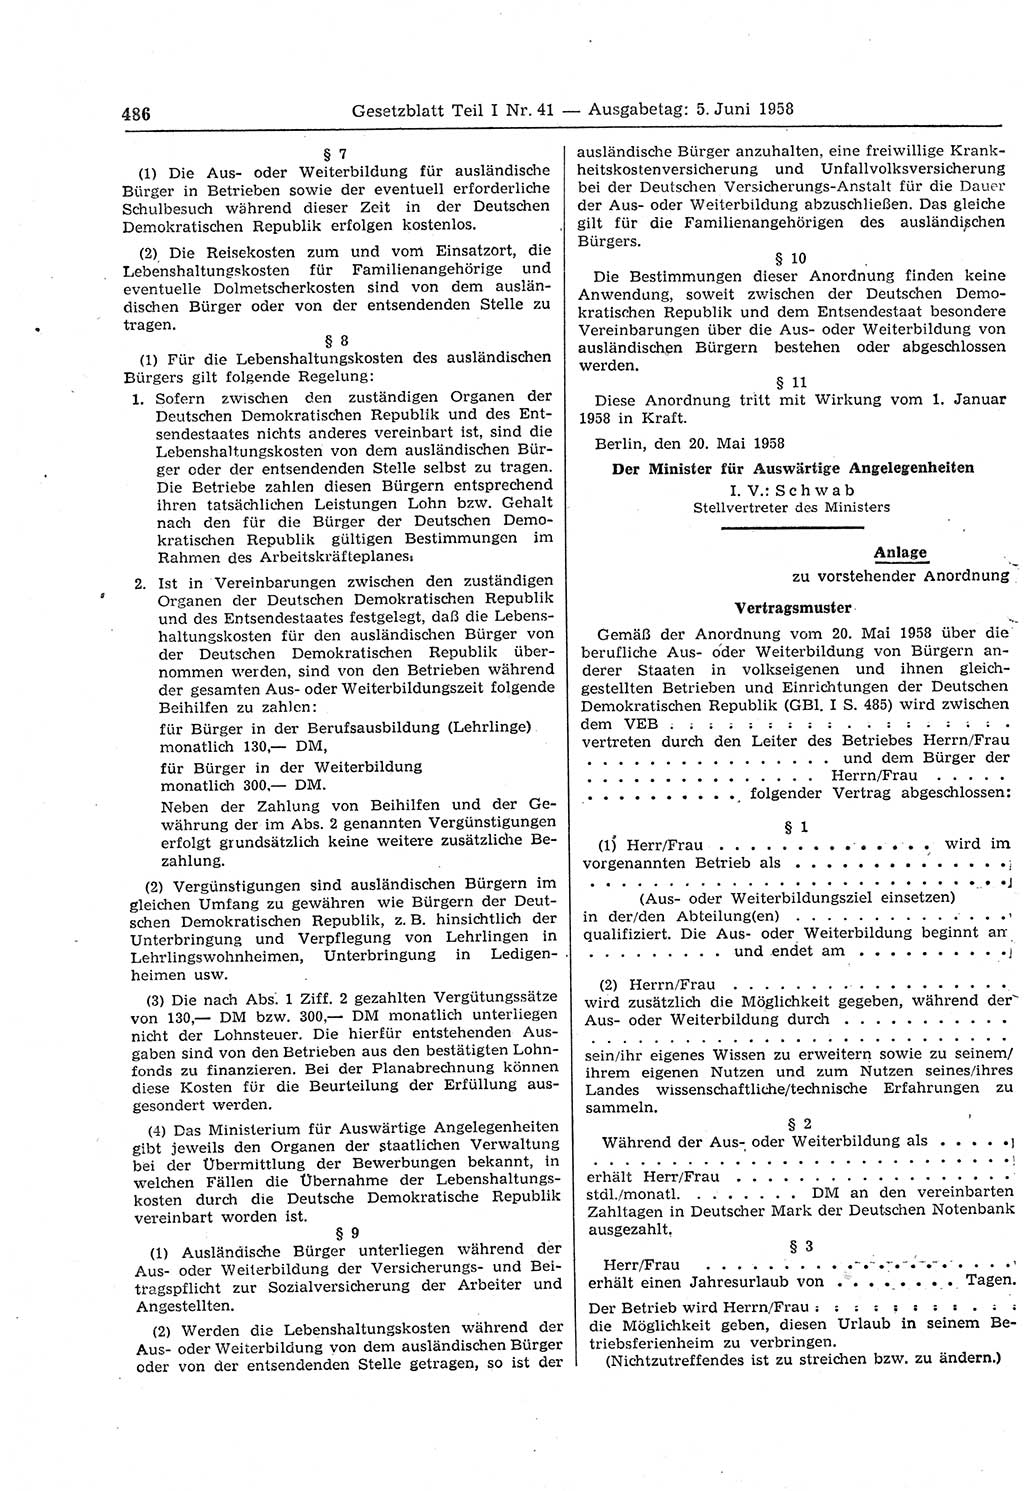 Gesetzblatt (GBl.) der Deutschen Demokratischen Republik (DDR) Teil Ⅰ 1958, Seite 486 (GBl. DDR Ⅰ 1958, S. 486)